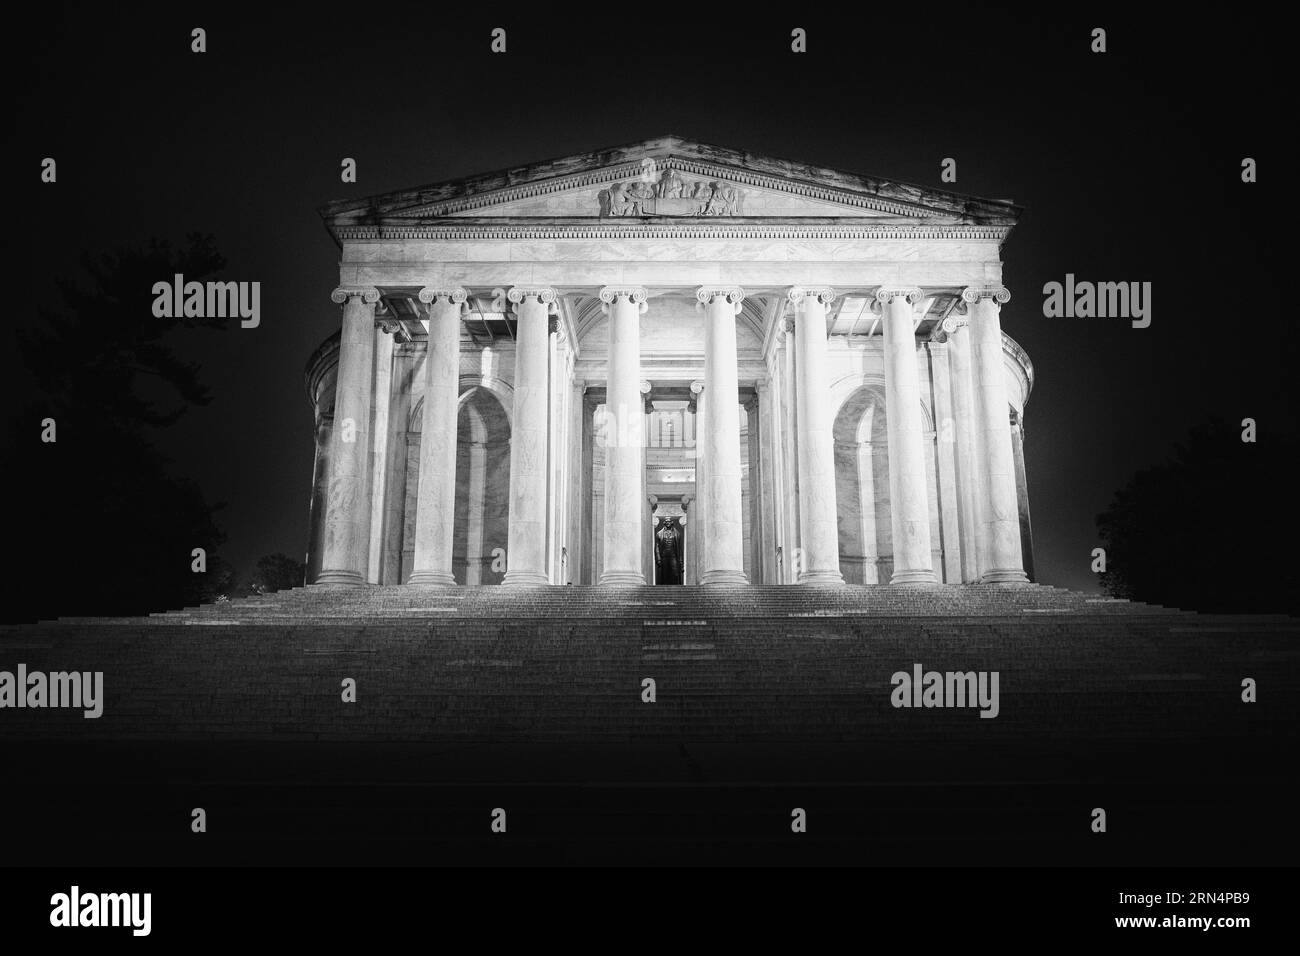 WASHINGTON DC, Stati Uniti - Una fotografia in bianco e nero del Jefferson Memorial. Il Jefferson Memorial è un omaggio iconico al terzo presidente degli Stati Uniti, Thomas Jefferson. Affacciato sul bacino di Tidal, questo monumento neoclassico testimonia il contributo di Jefferson ai principi fondanti della nazione. Foto Stock